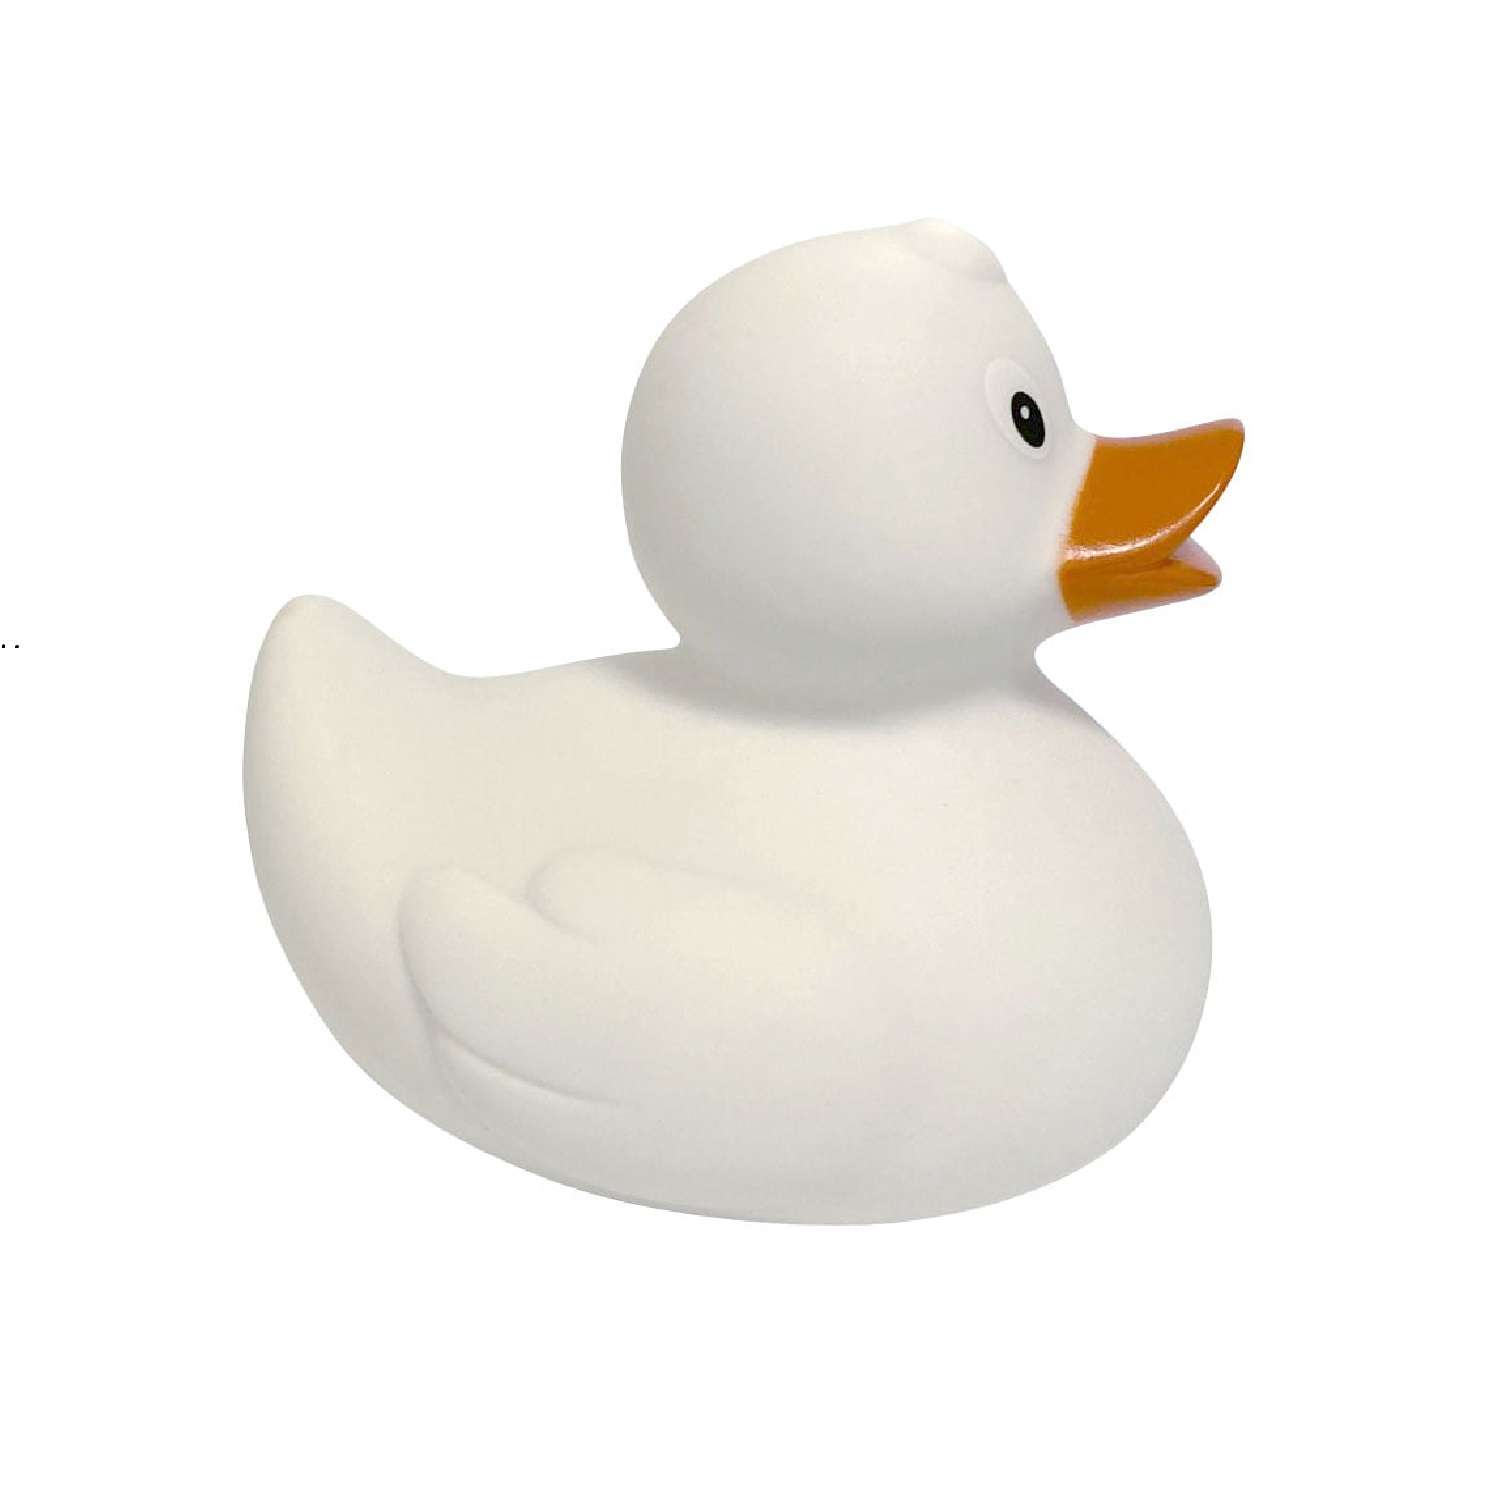 Игрушка Funny ducks для ванной Белая уточка 1303 - фото 4